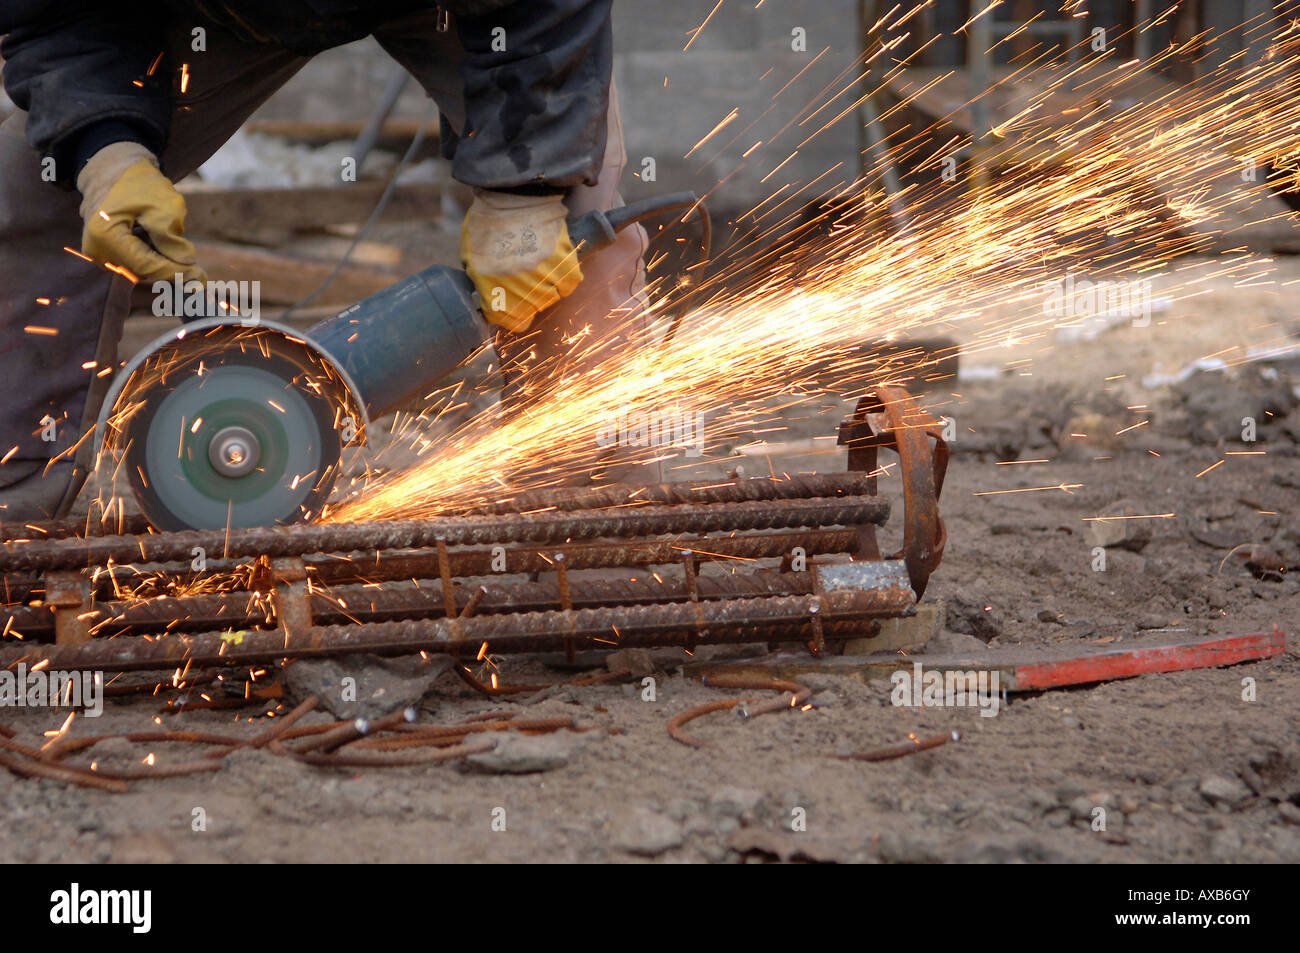 Construction Worker couper le métal avec une scie circulaire Photo Stock -  Alamy